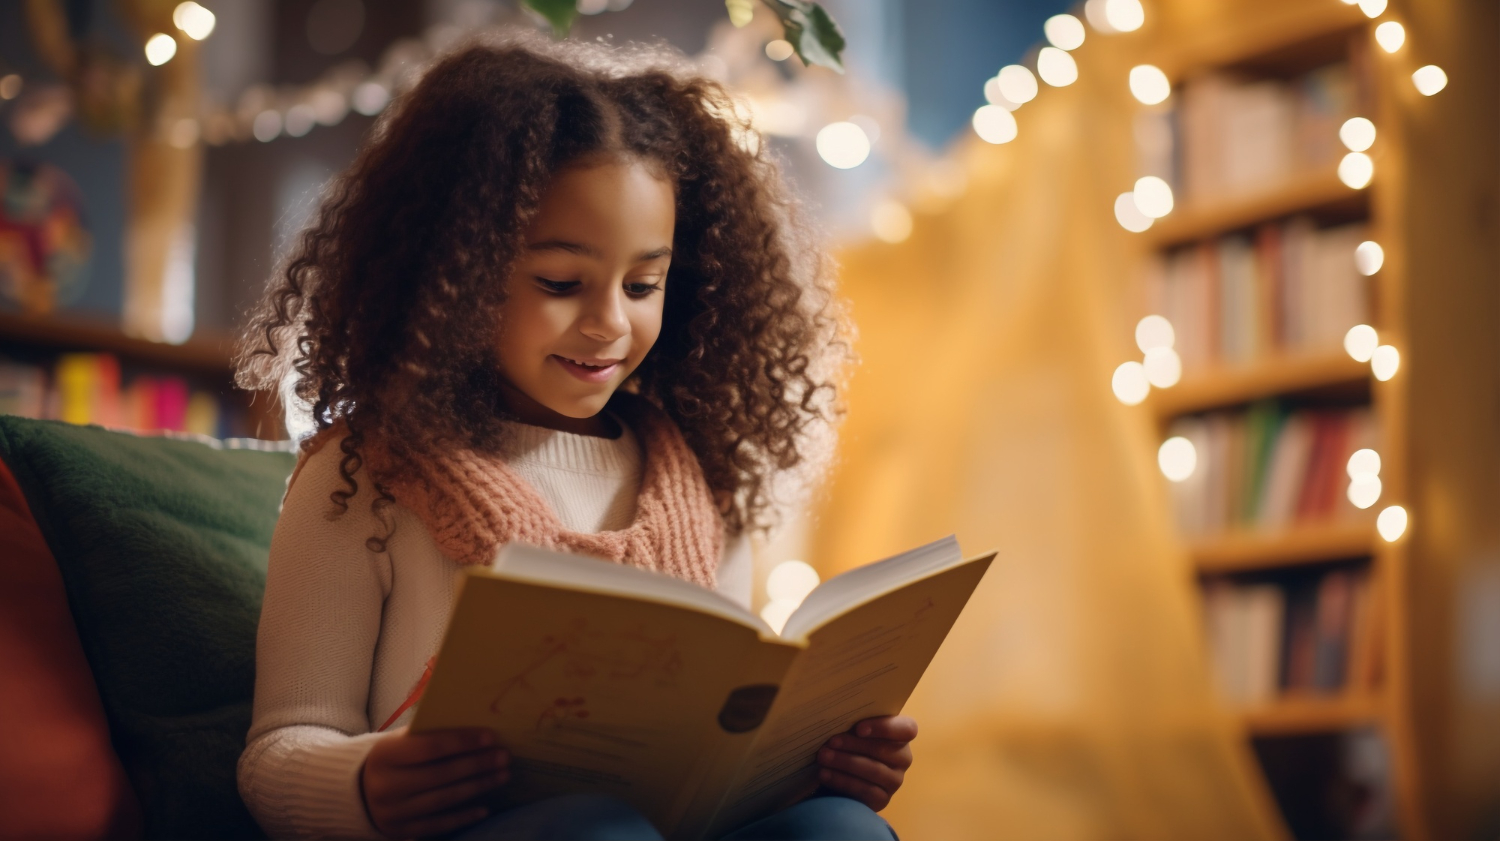 Público infantil é o que mais lê: conheça benefícios da prática